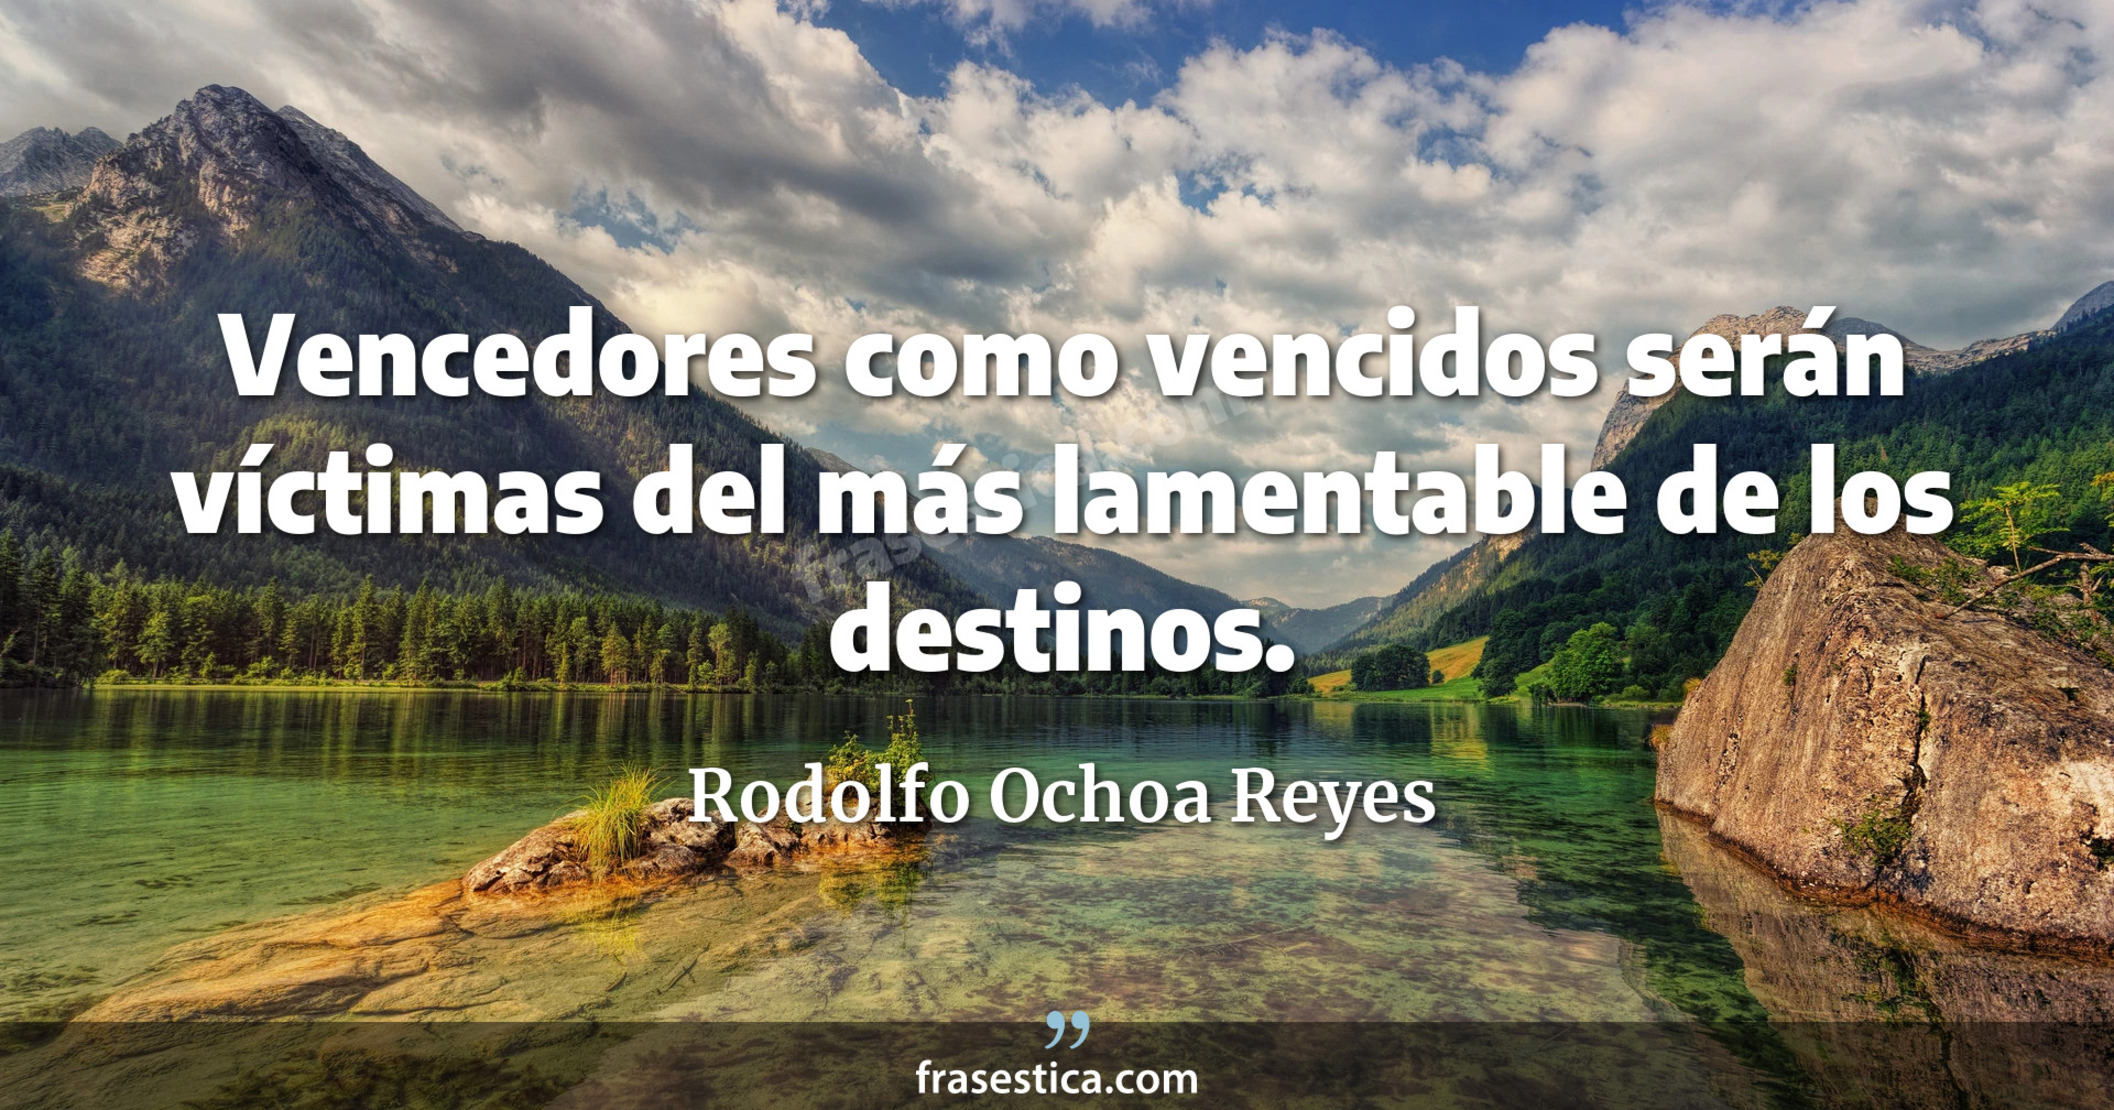 Vencedores como vencidos serán víctimas del más lamentable de los destinos. - Rodolfo Ochoa Reyes